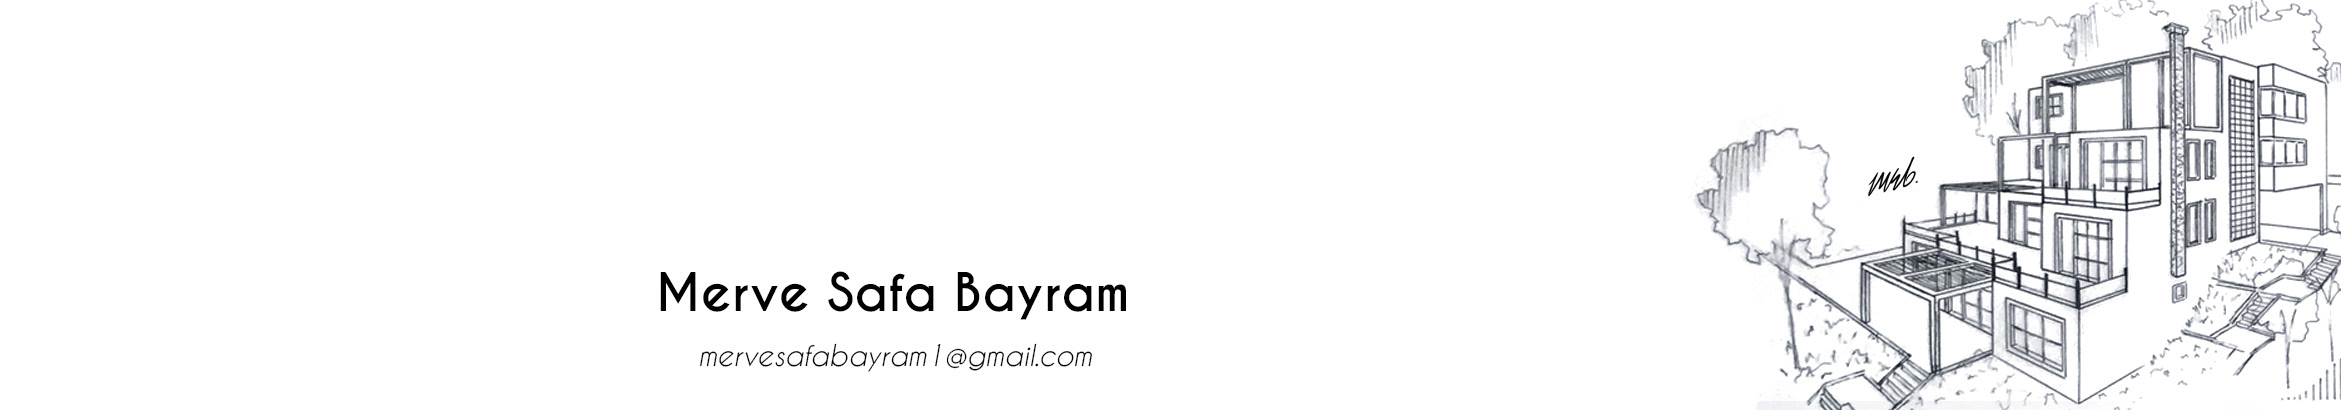 Merve Safa Bayram's profile banner